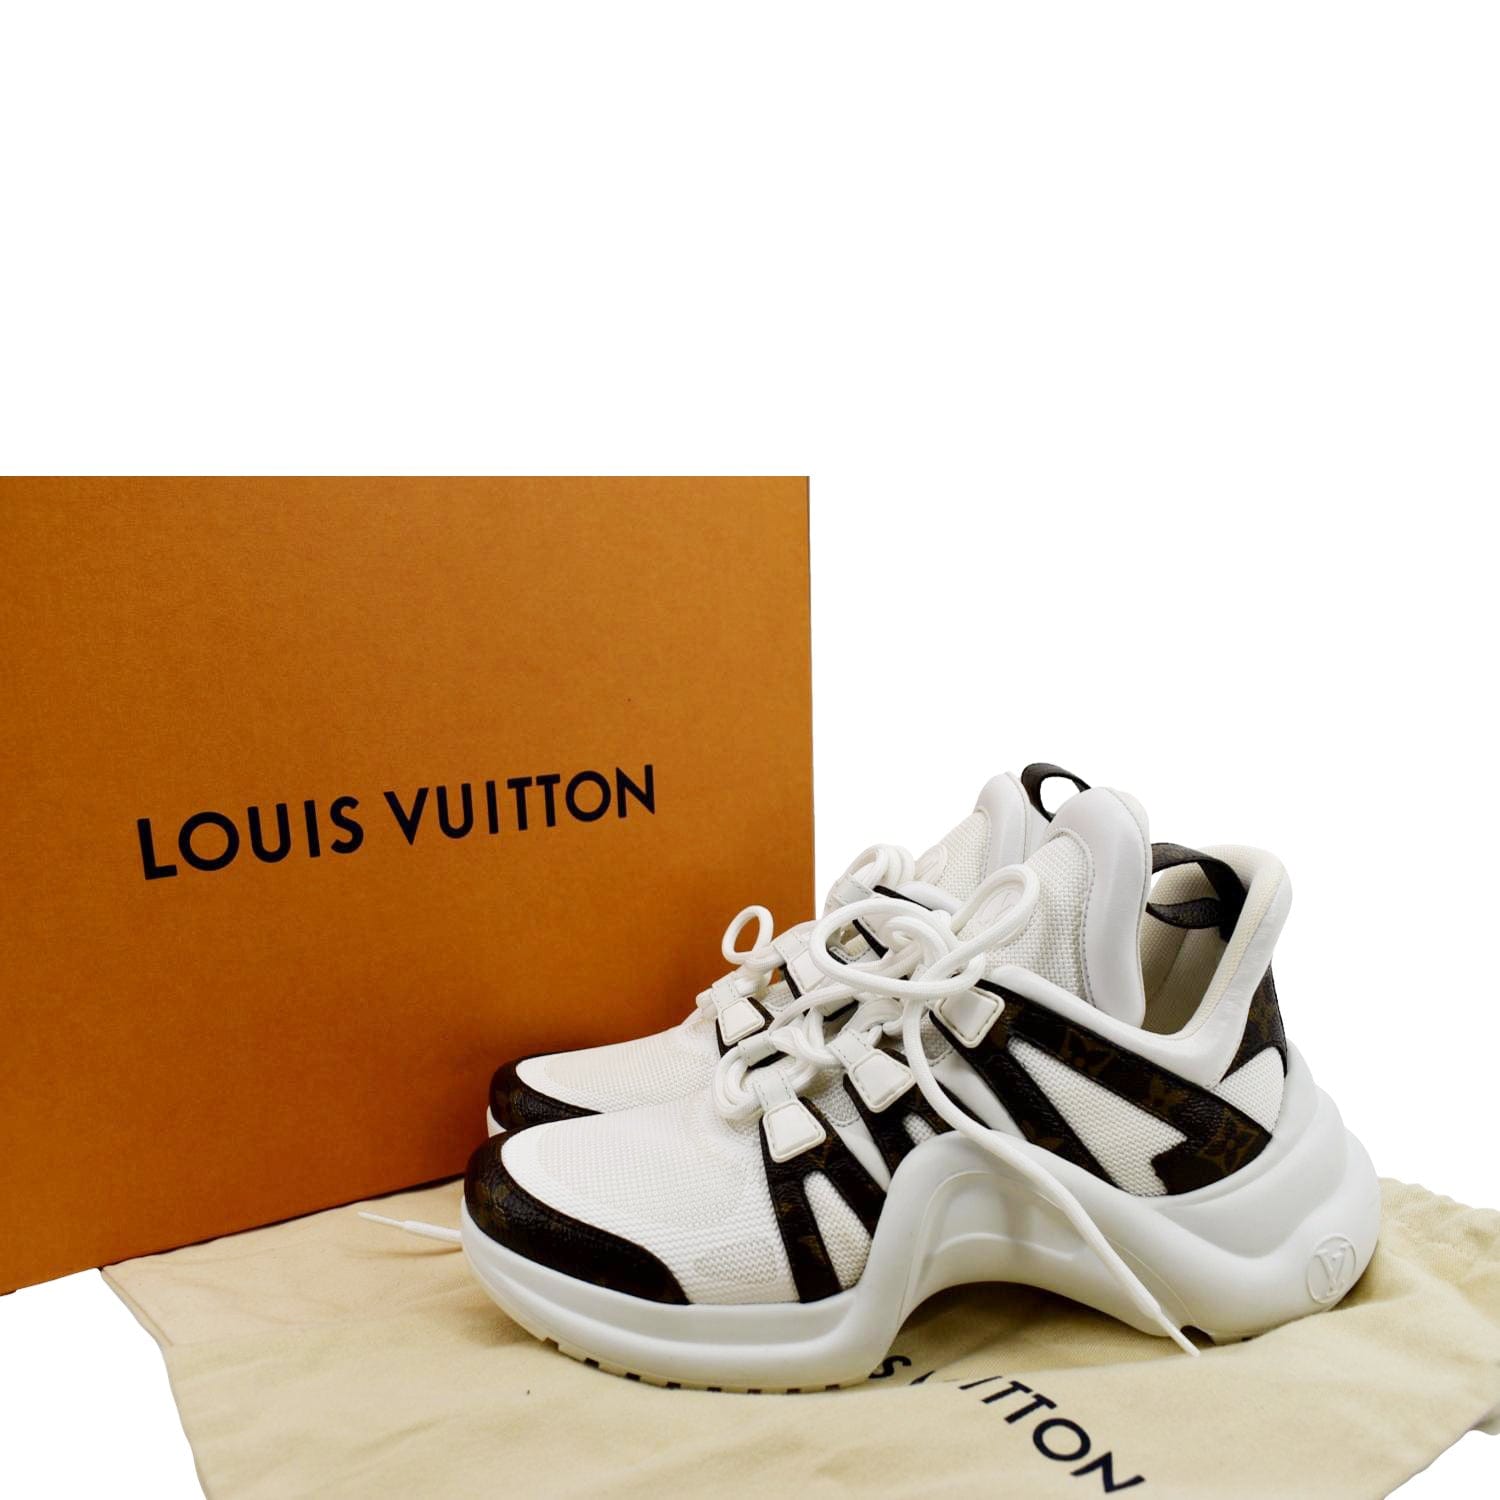 Louis Vuitton Tennis Shoes Archlight